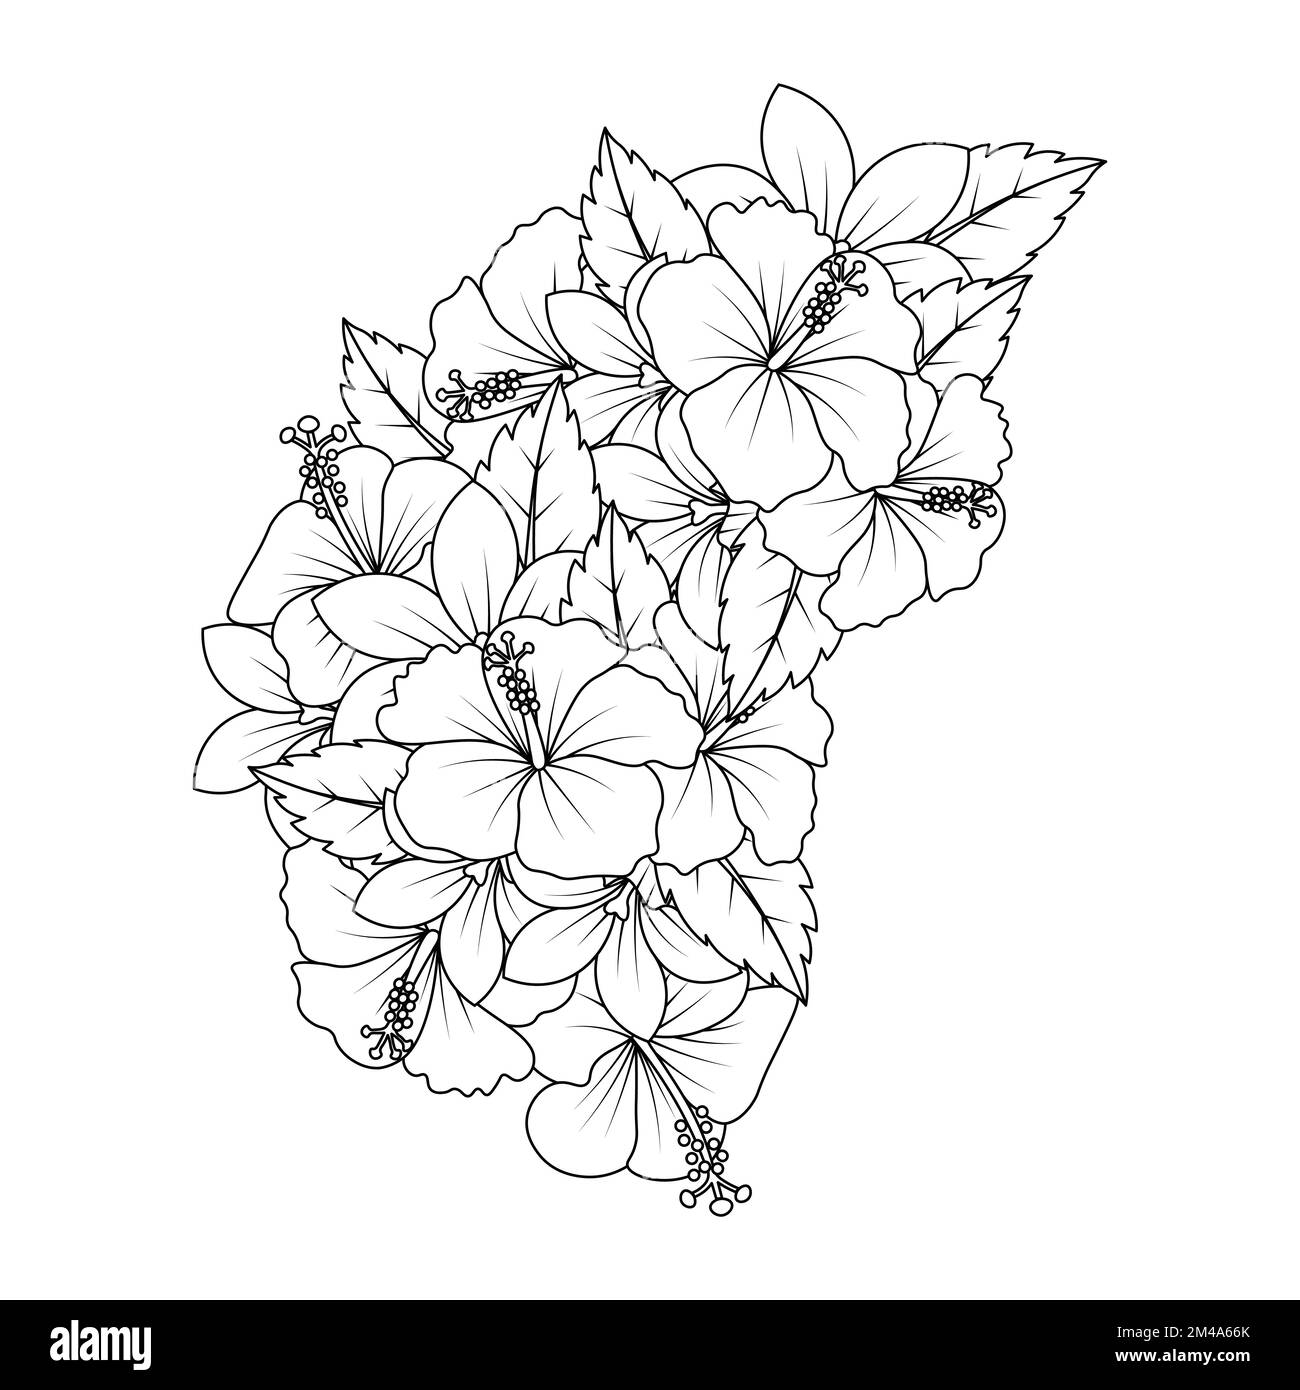 Diseño De Arte De Garabatos De Flores De Hibisco De Página Para Colorear Con Gráfico Vectorial 7233